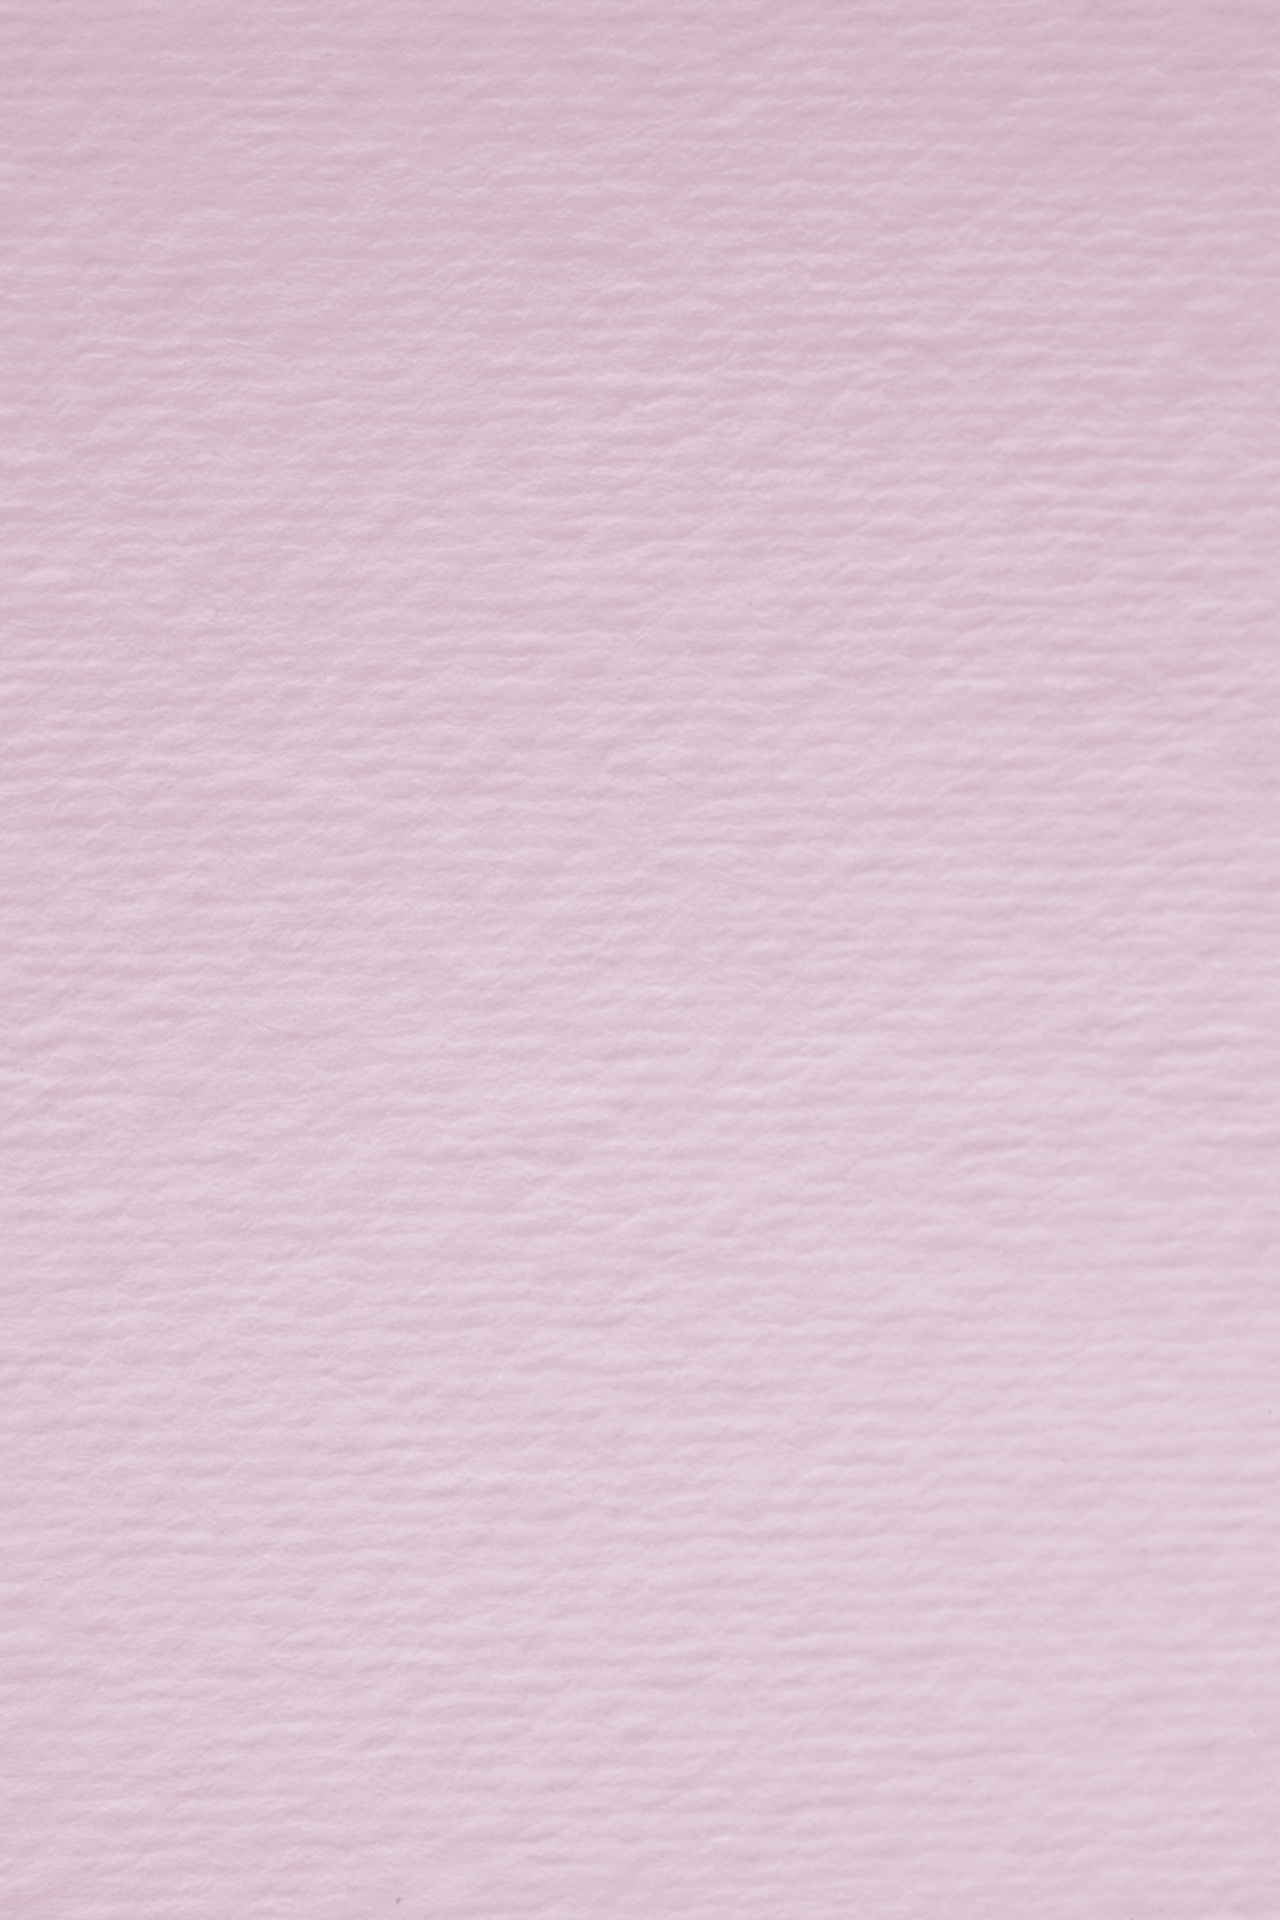 纸张纹理玫瑰粉红色的背景